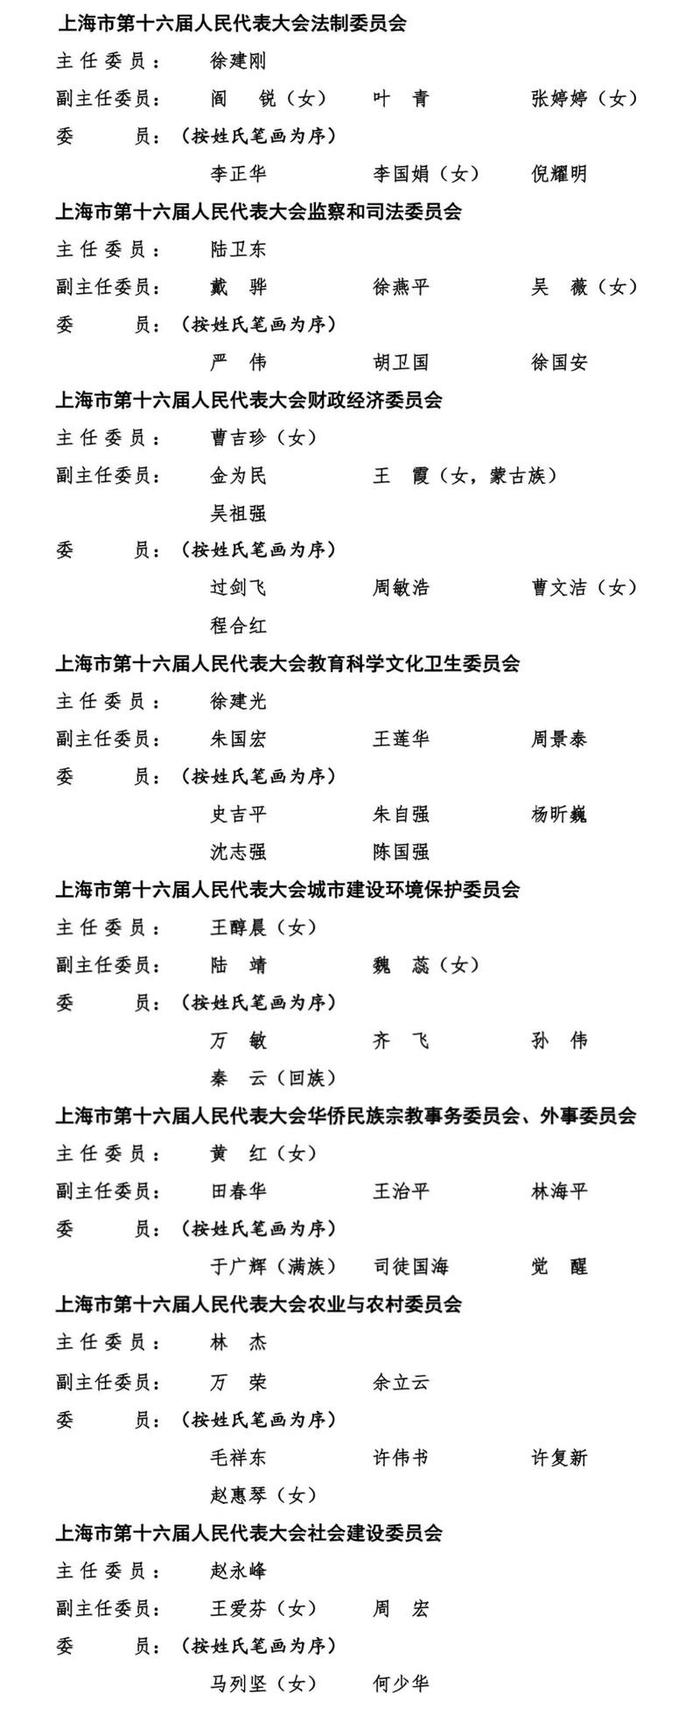 上海市第十六届人大各专委会主任委员、副主任委员和委员名单